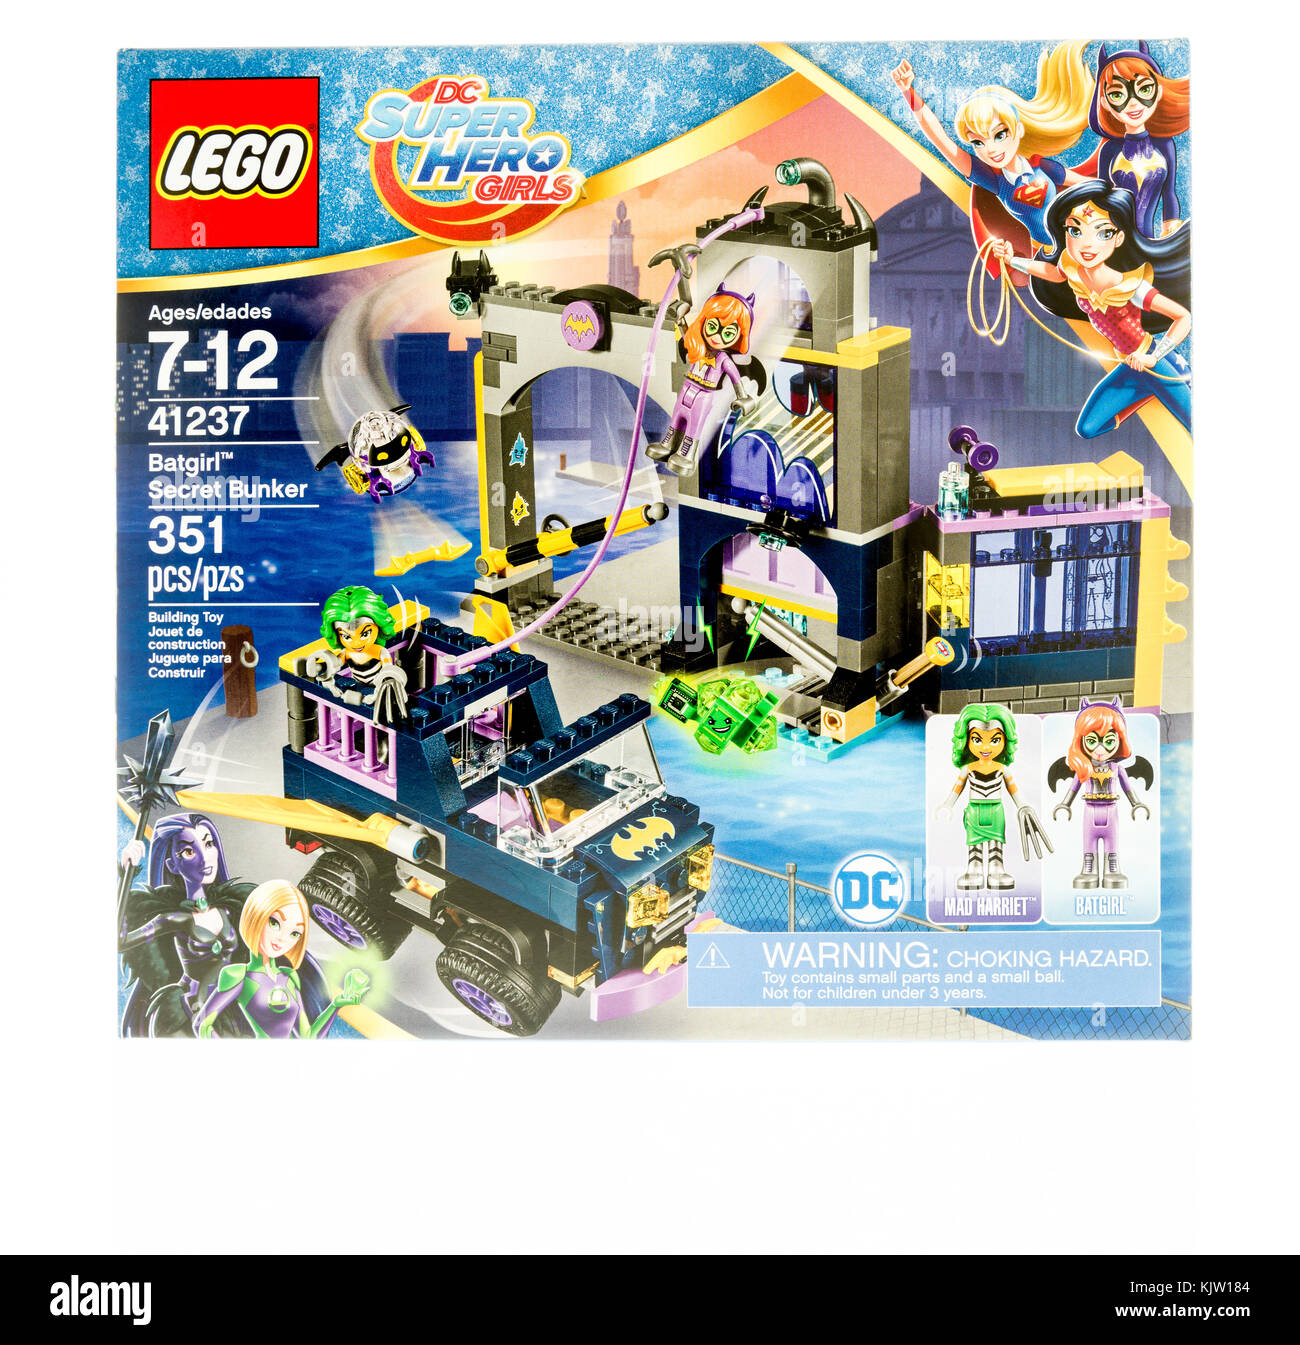 Winneconne, WI - 19 Noviembre 2017: Una caja de Lego con DC Super Hero  Girls con Batgirl en Secret Bunker en un fondo aislado Fotografía de stock  - Alamy